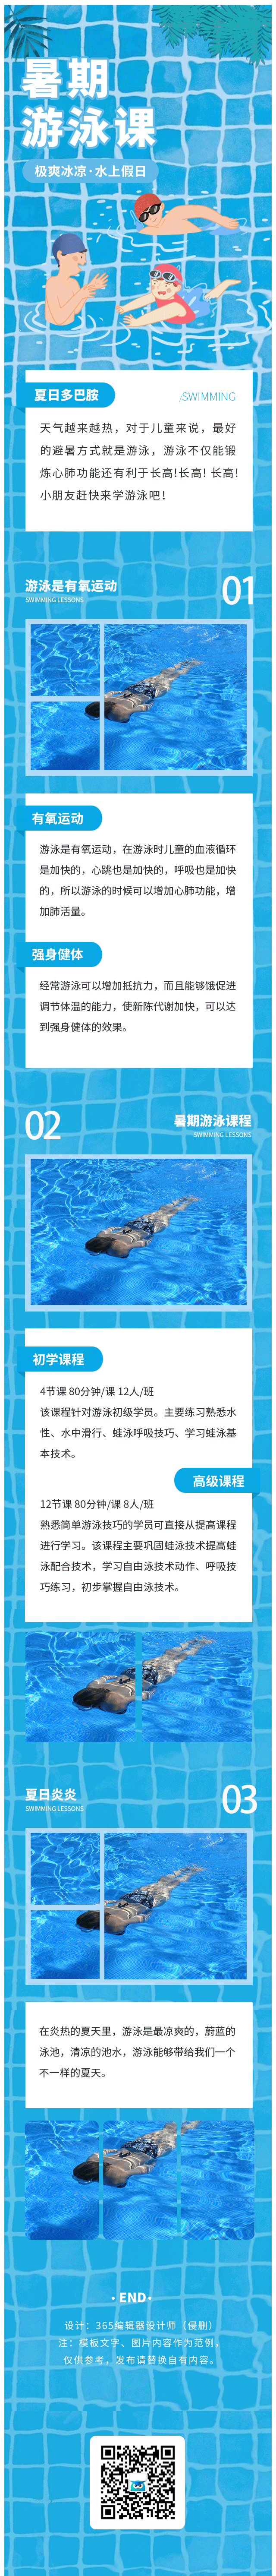 暑假假期活动暑期游泳艺术课程蓝色简约